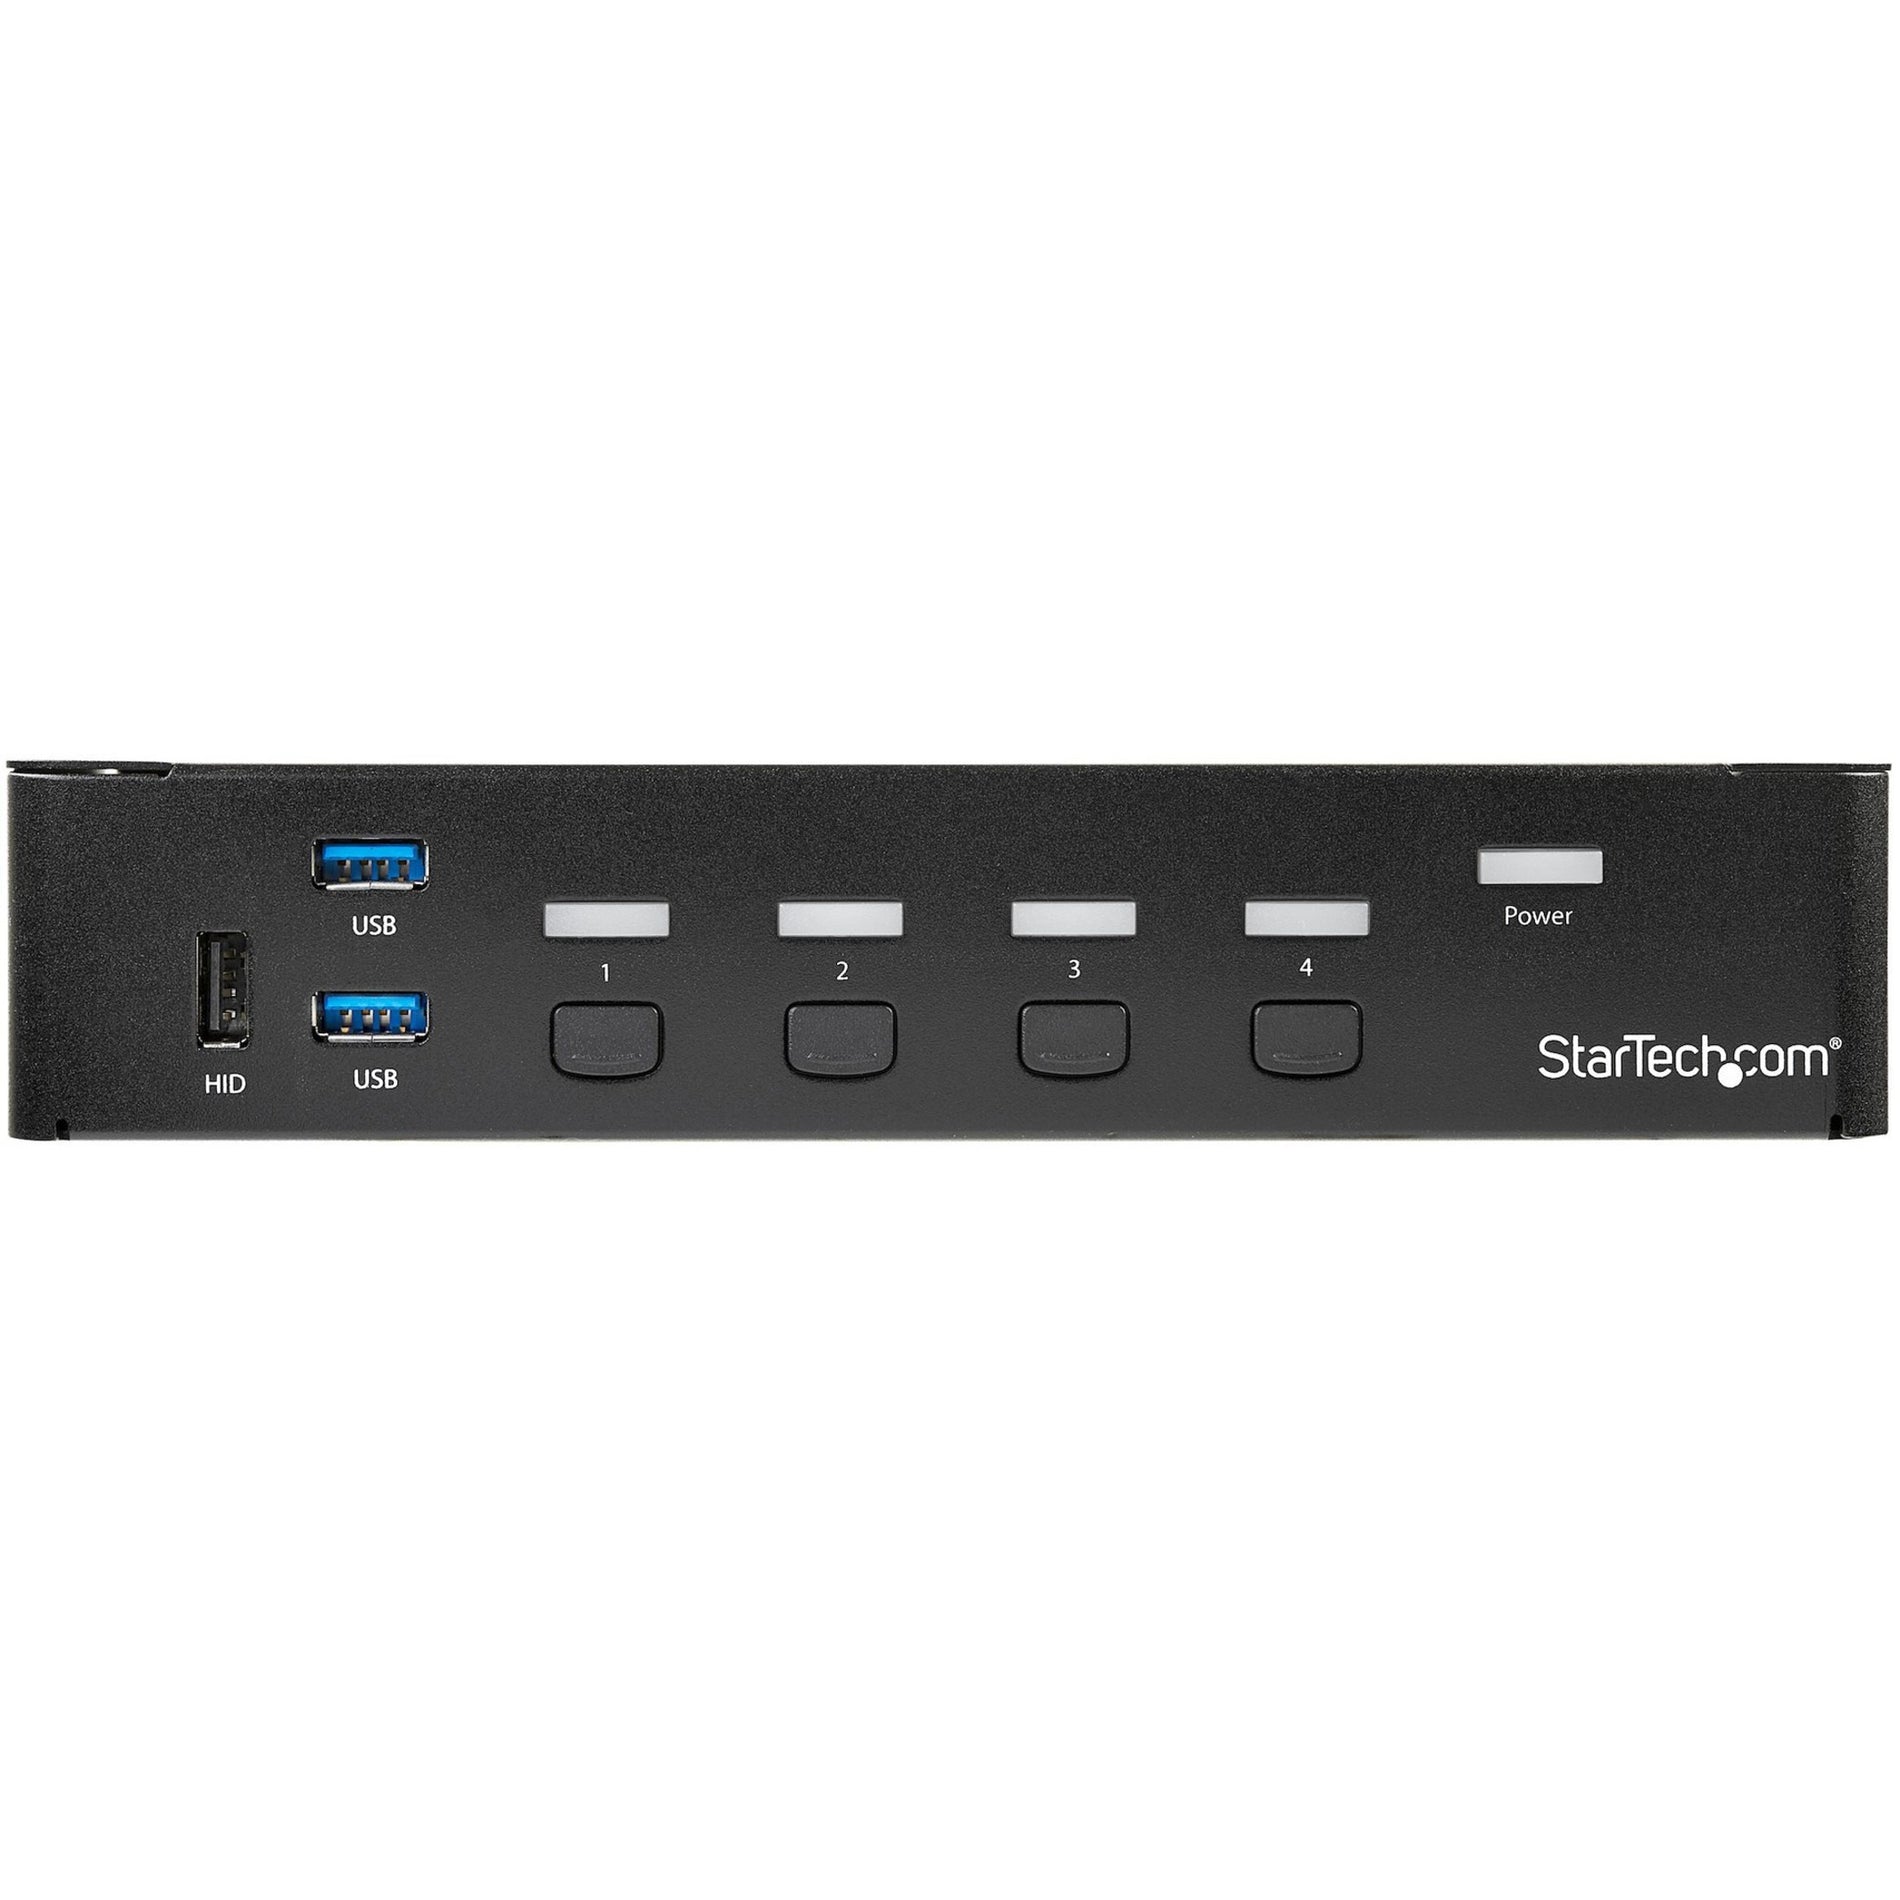 StarTech.com Conmutador KVM de 4 puertos DisplayPort SV431DPU3A2 - USB 3.0 - 4K Concentrador USB 3.0 incorporado para periféricos.